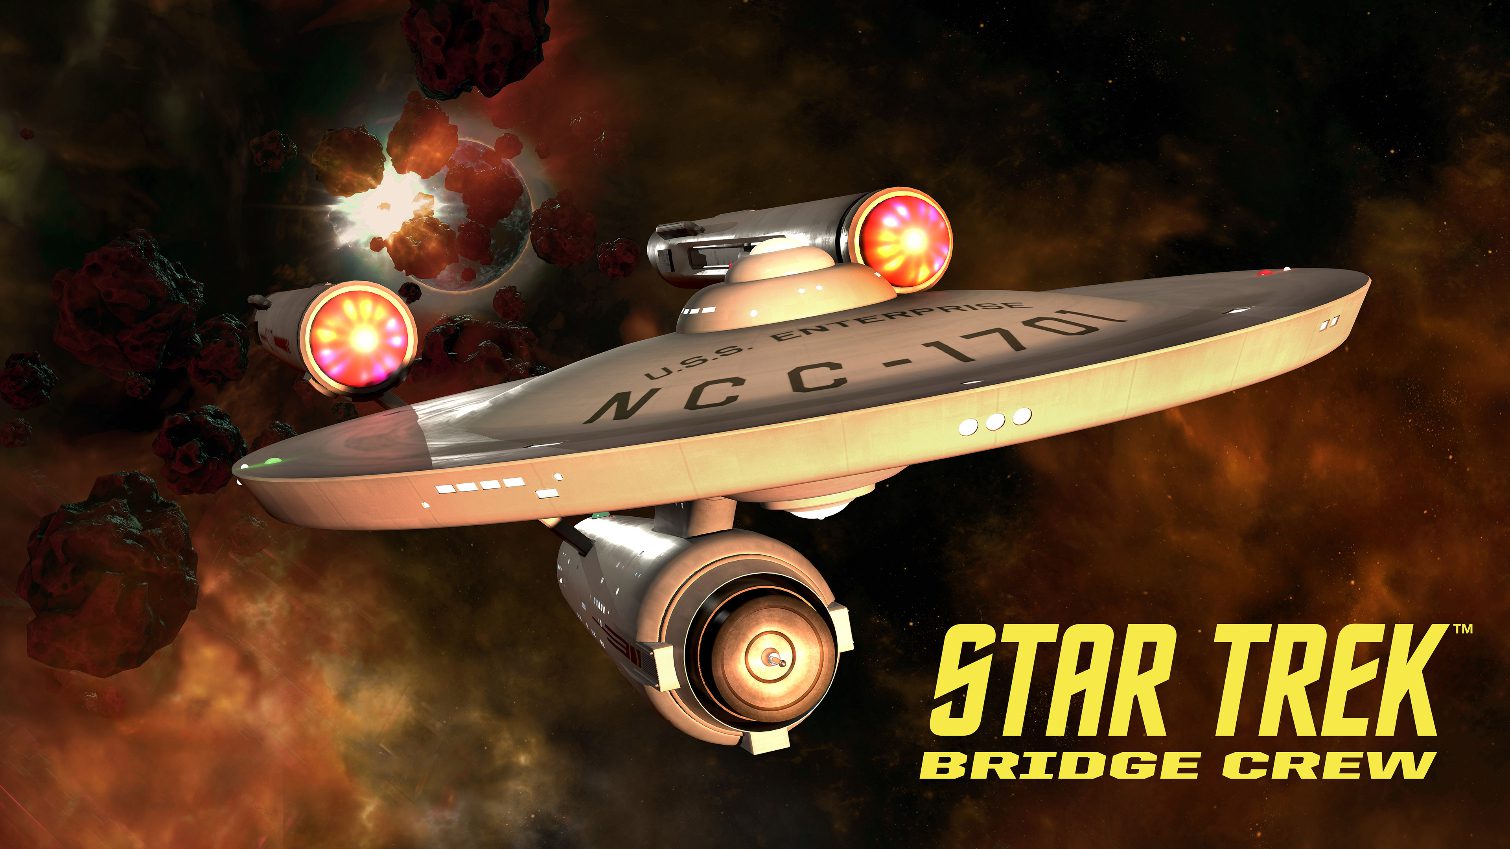 TOS Enterprise bridge to feature in VR game Star Trek: Bridge Crew